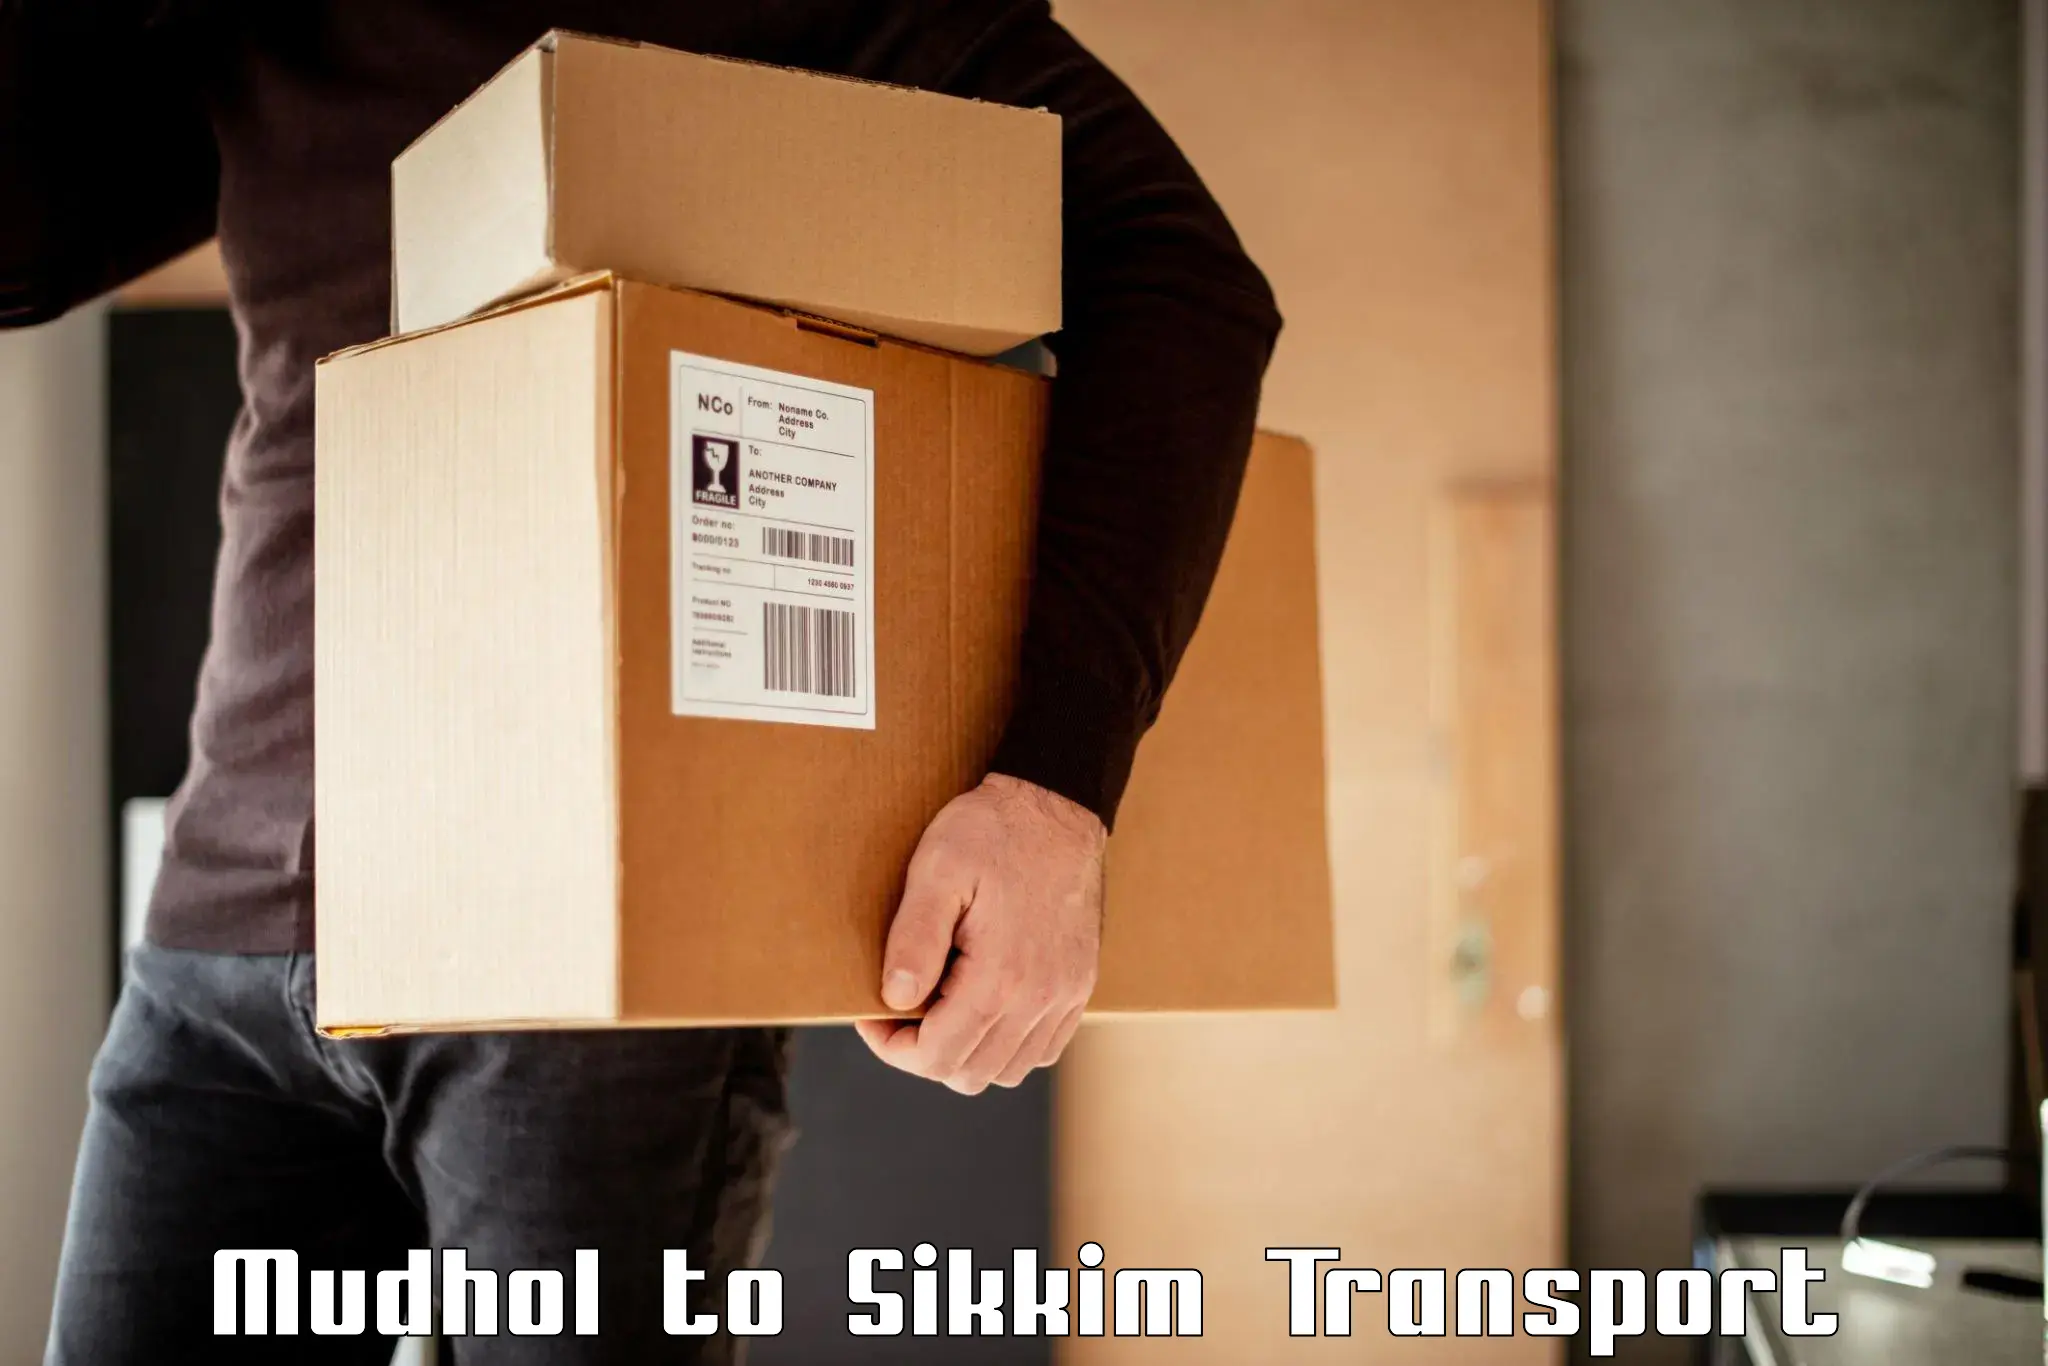 Online transport booking Mudhol to Geyzing